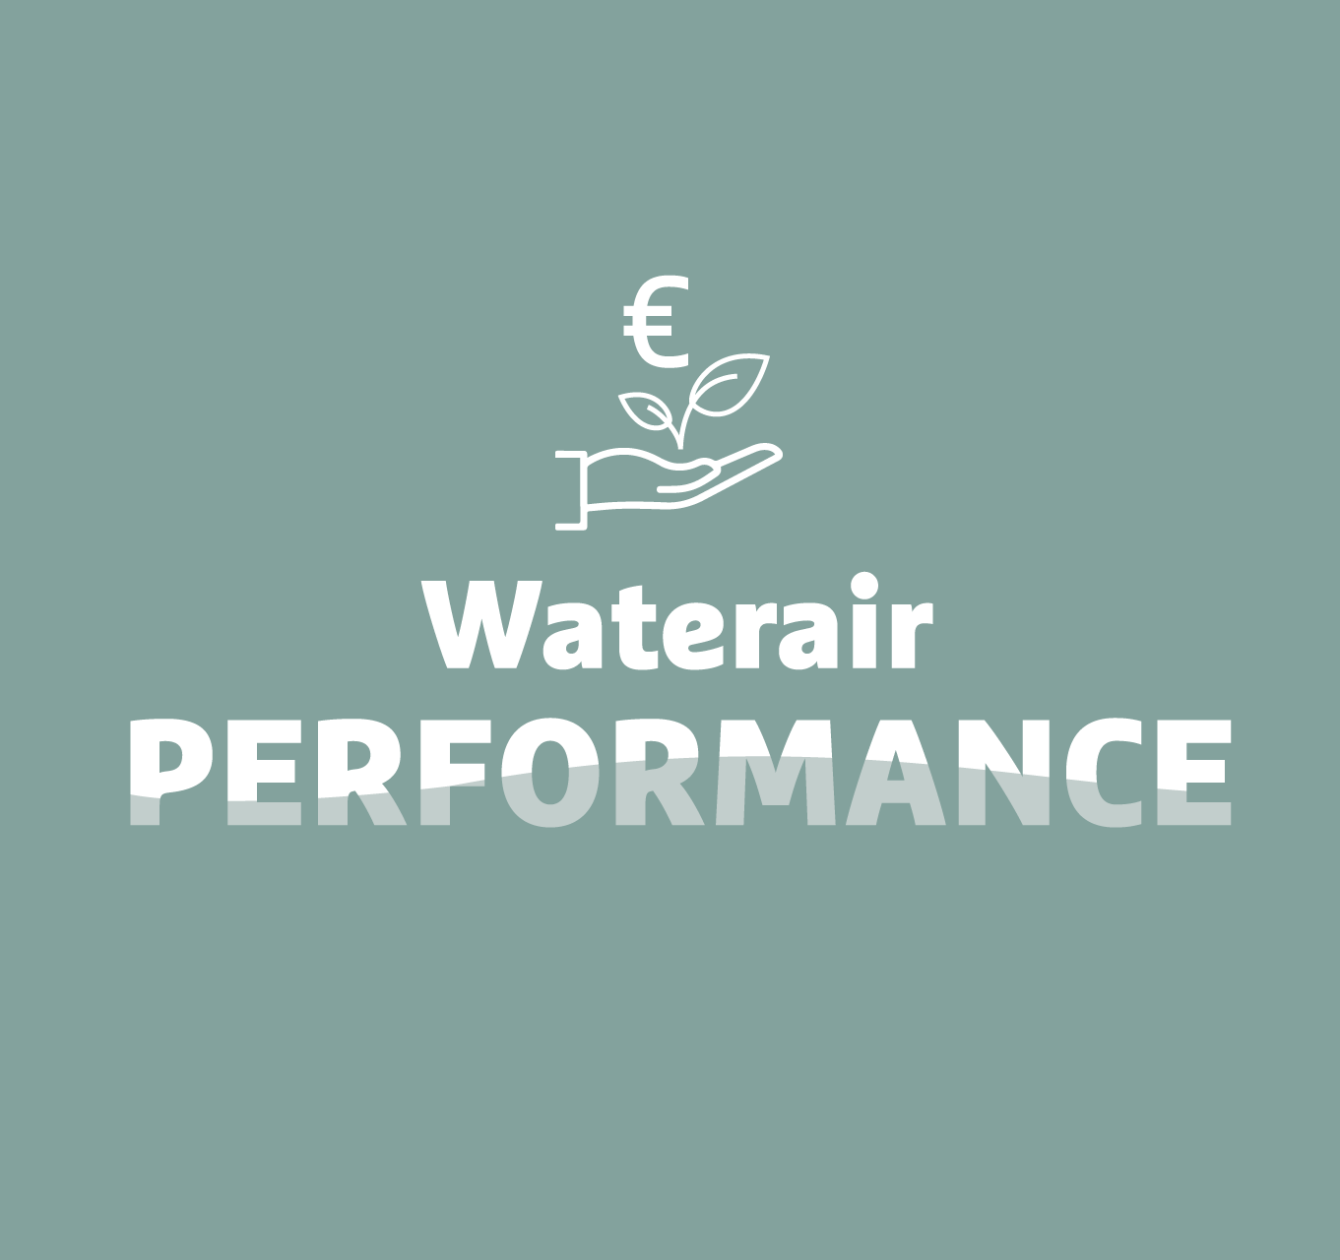 Waterair Performance: taloudellinen ja ympäristövastuullinen uima-allas